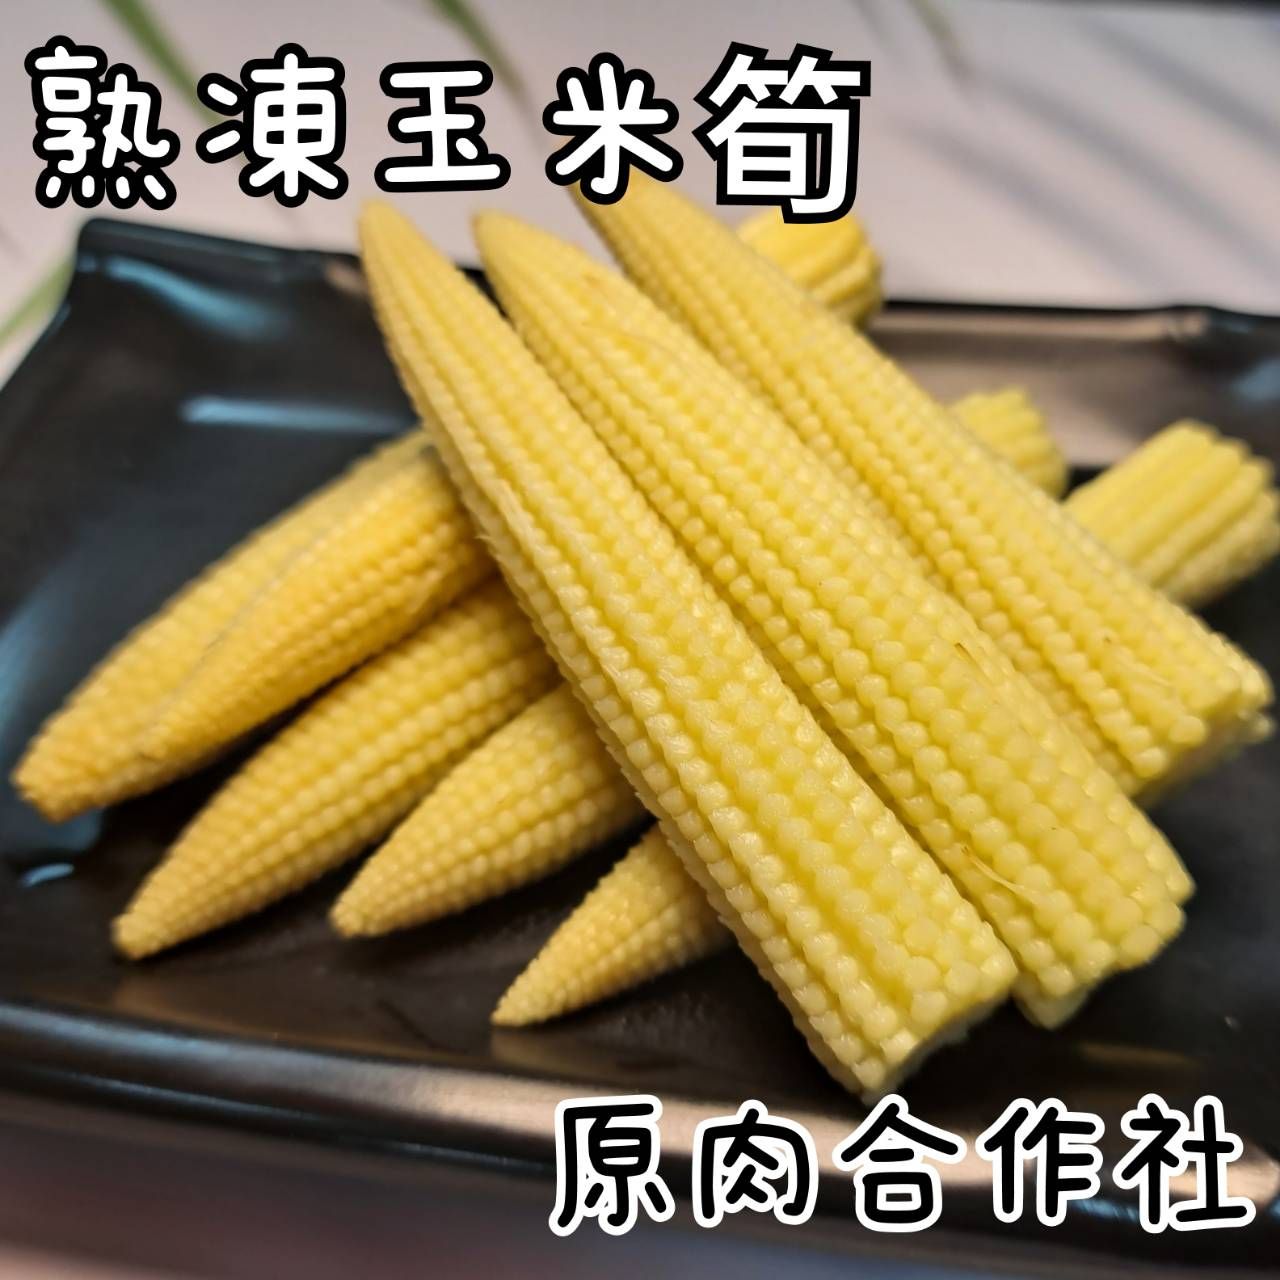 【原肉合作社】冷凍蔬菜 